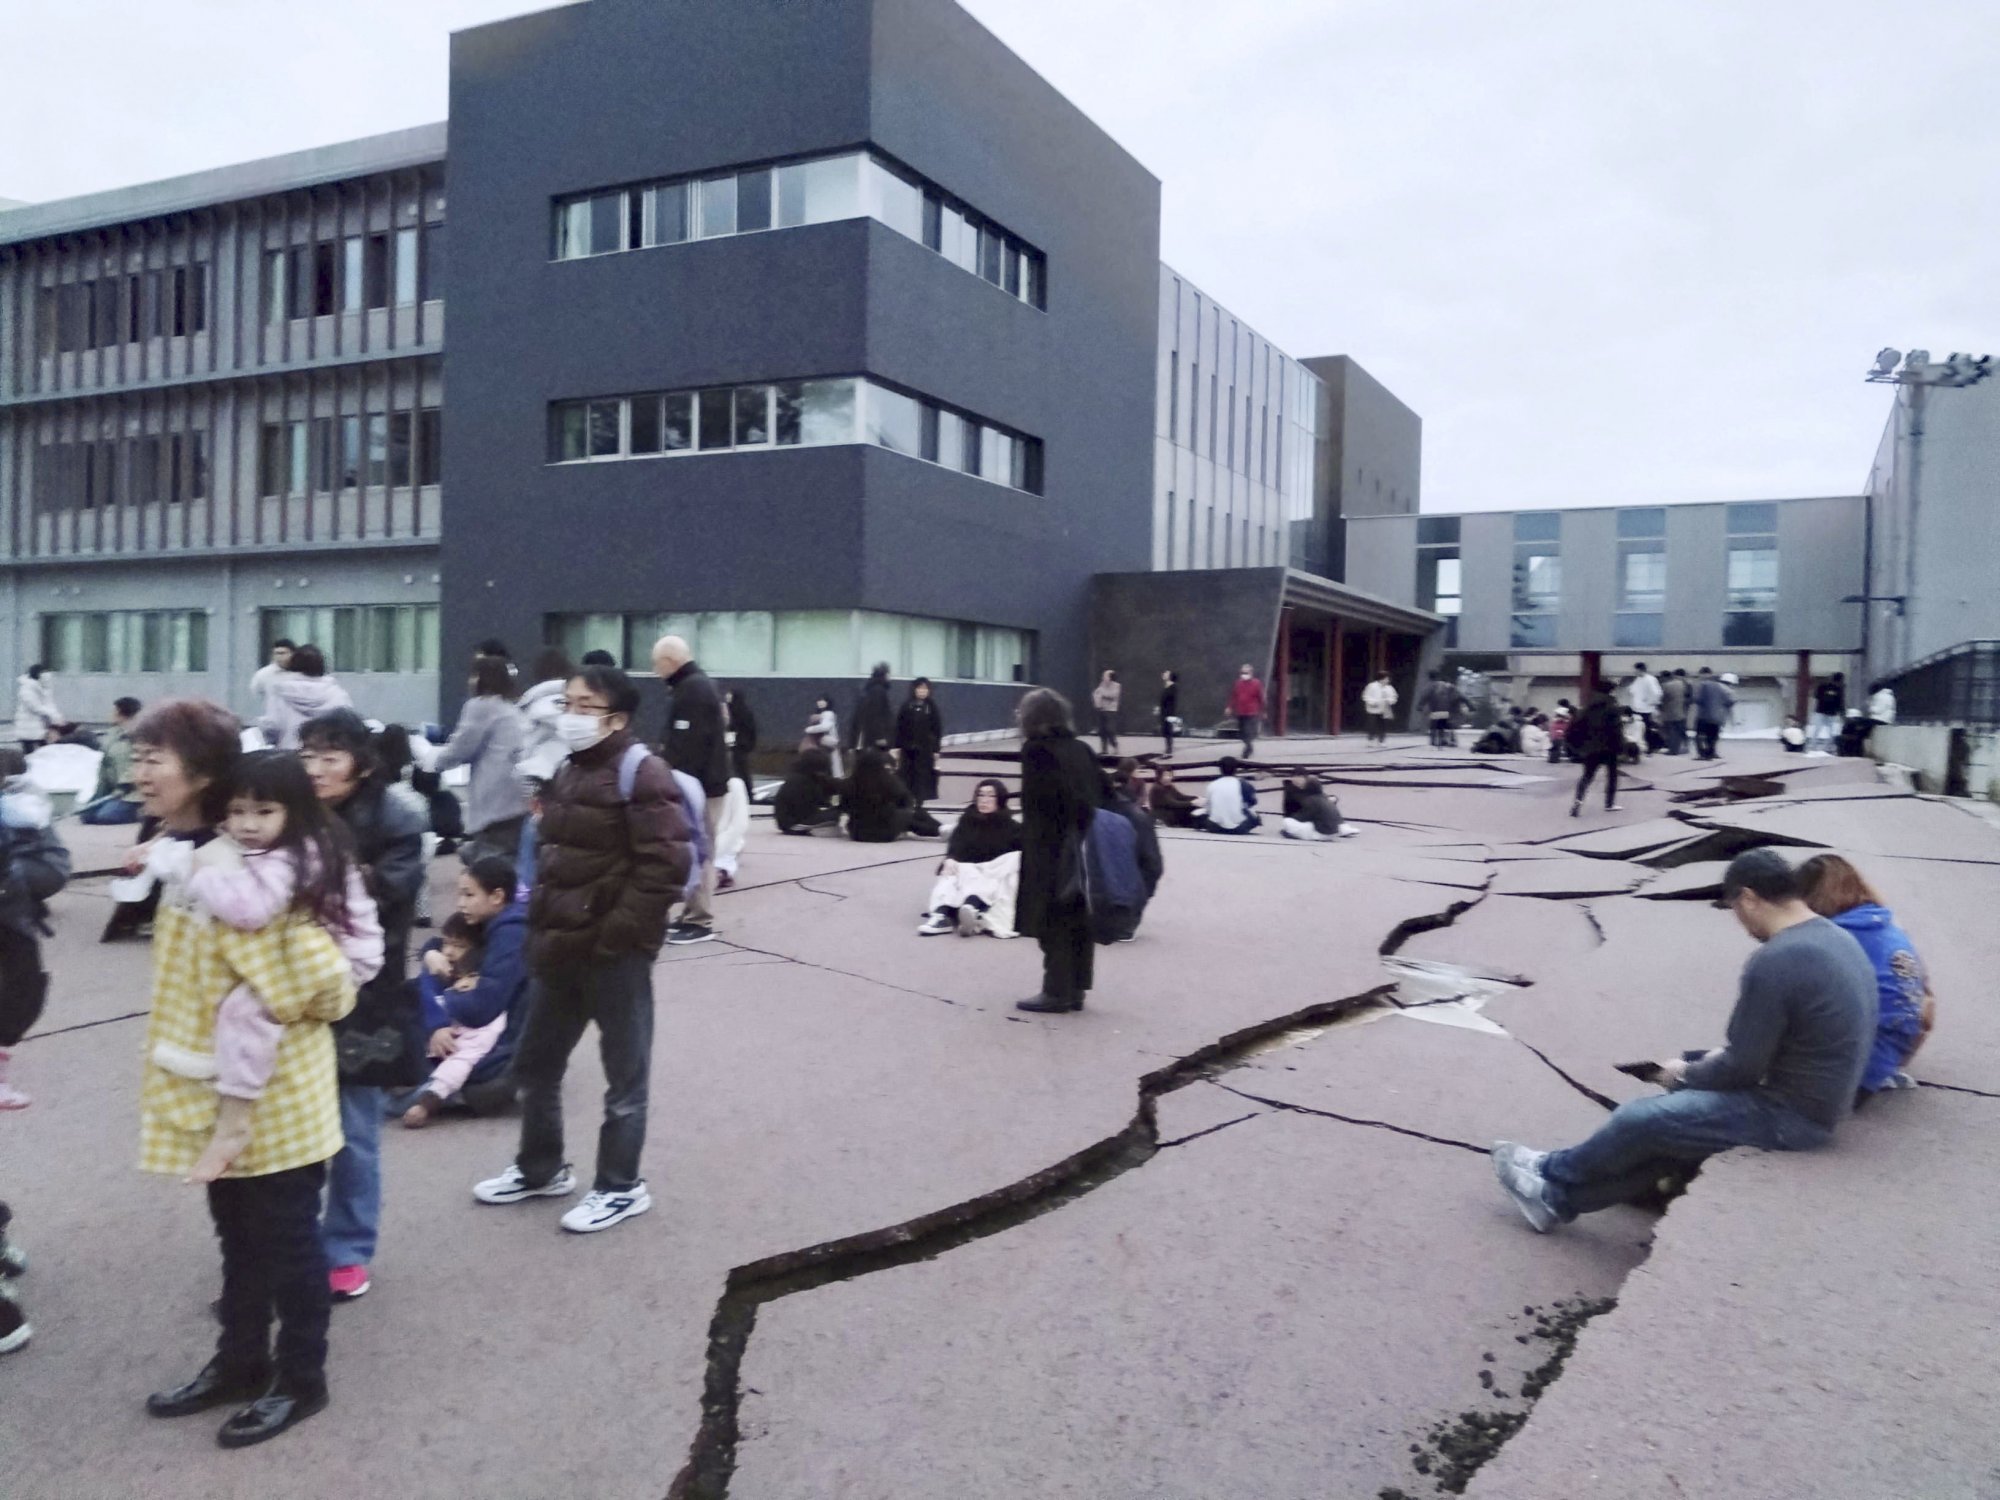 Ιαπωνία: Δρόμοι άνοιξαν στα δύο και κτίρια κατέρρευσαν μετά τα 7,4 Ρίχτερ (Βίντεο LIVE)